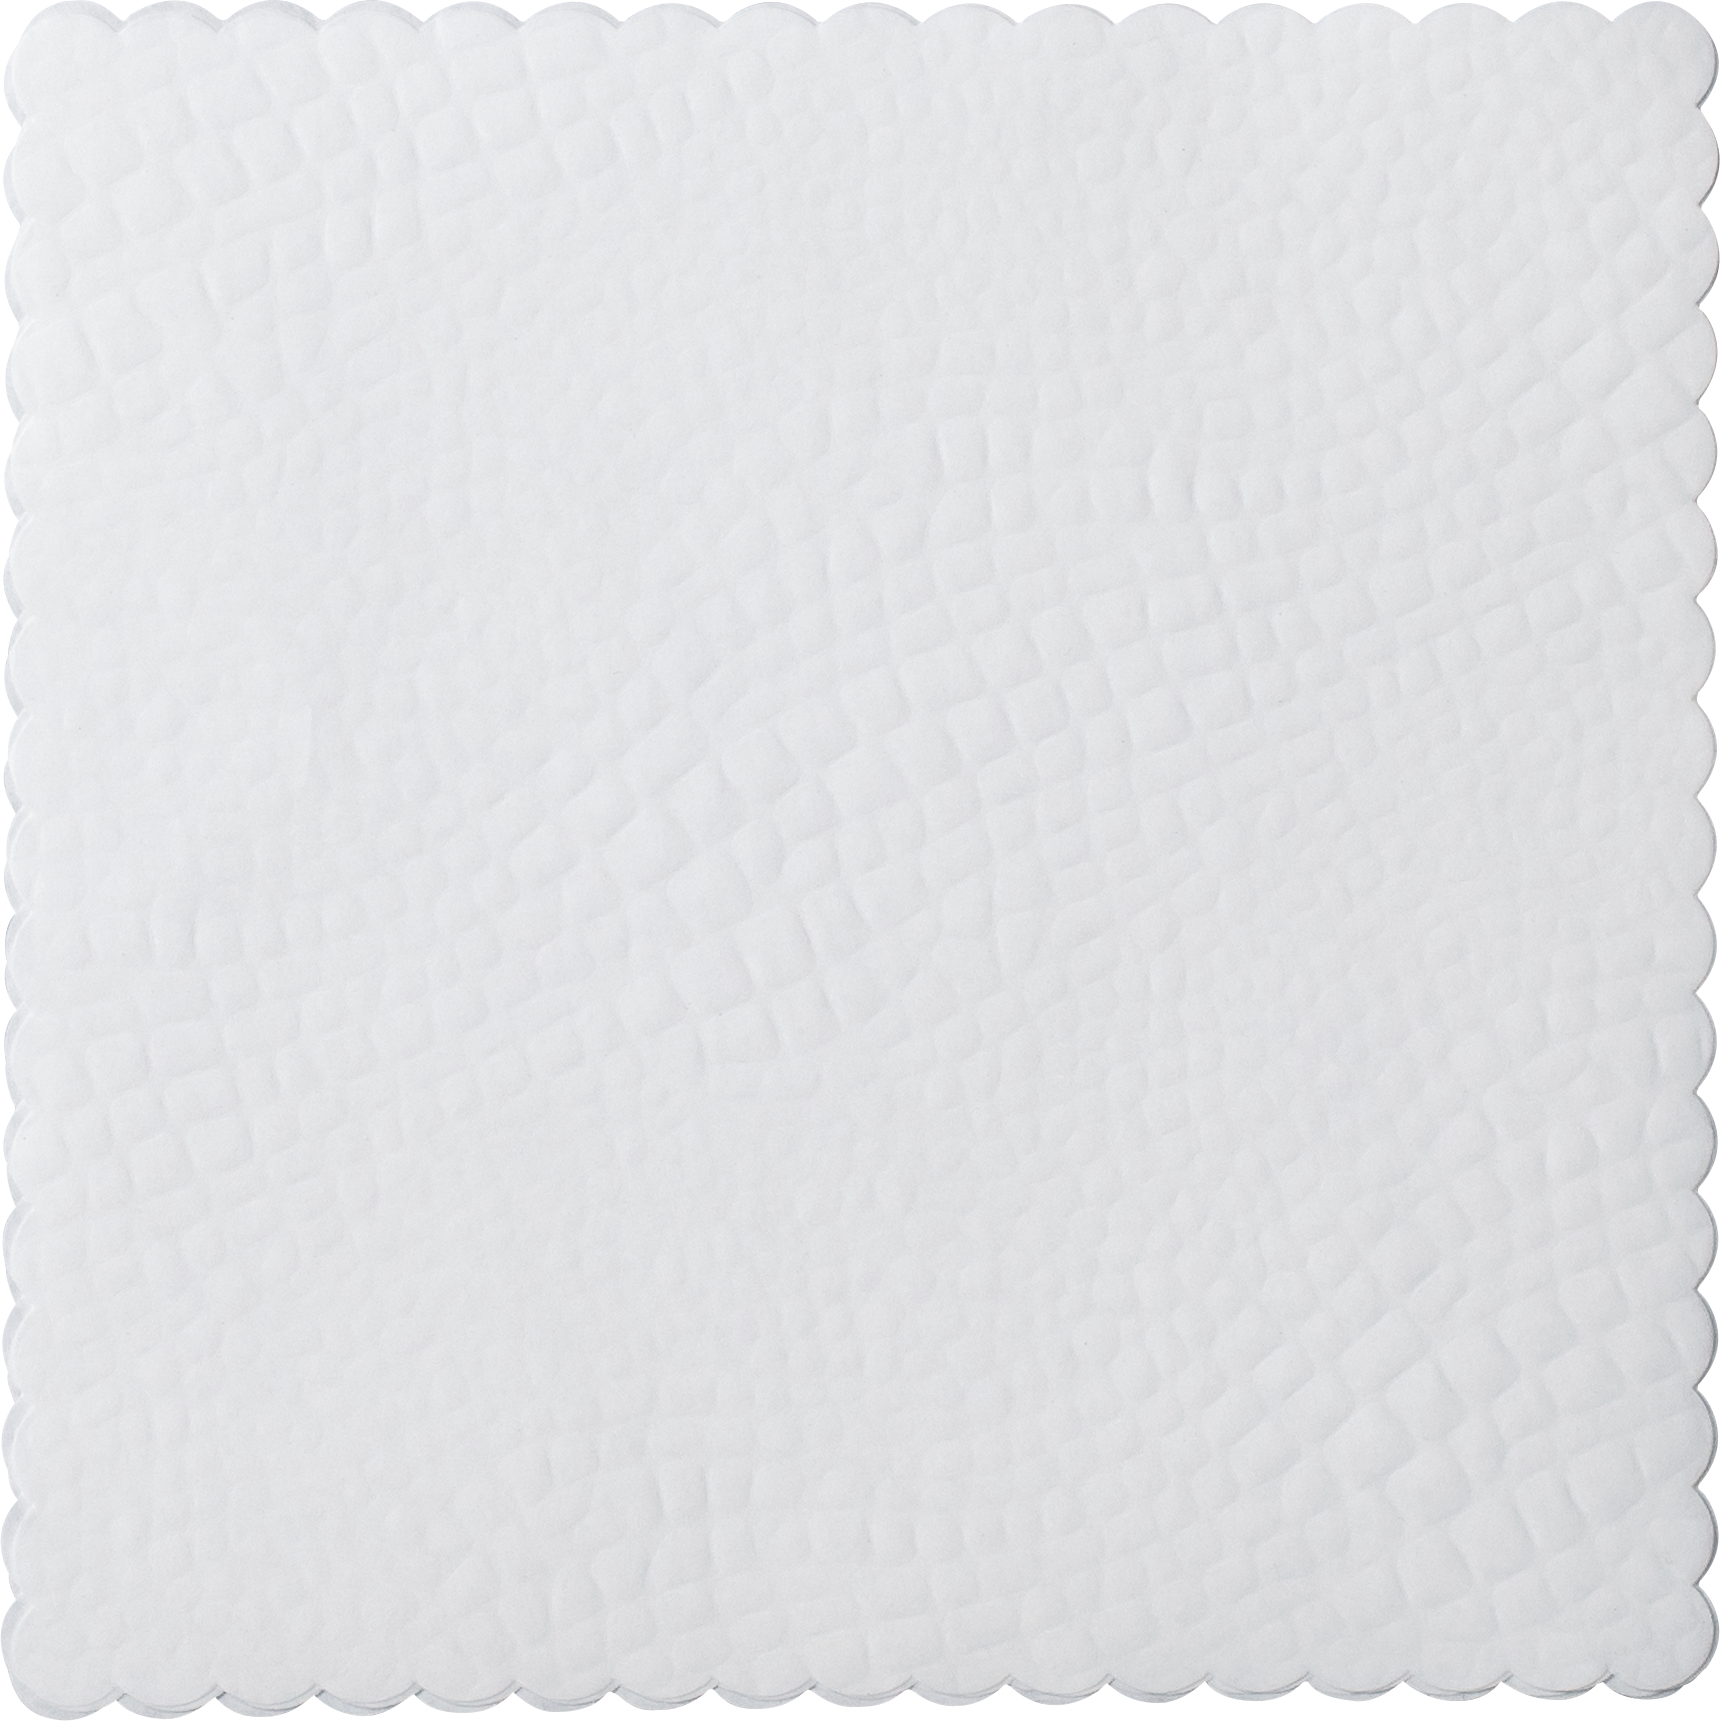 Croco dish paper square, 17 x 17cm